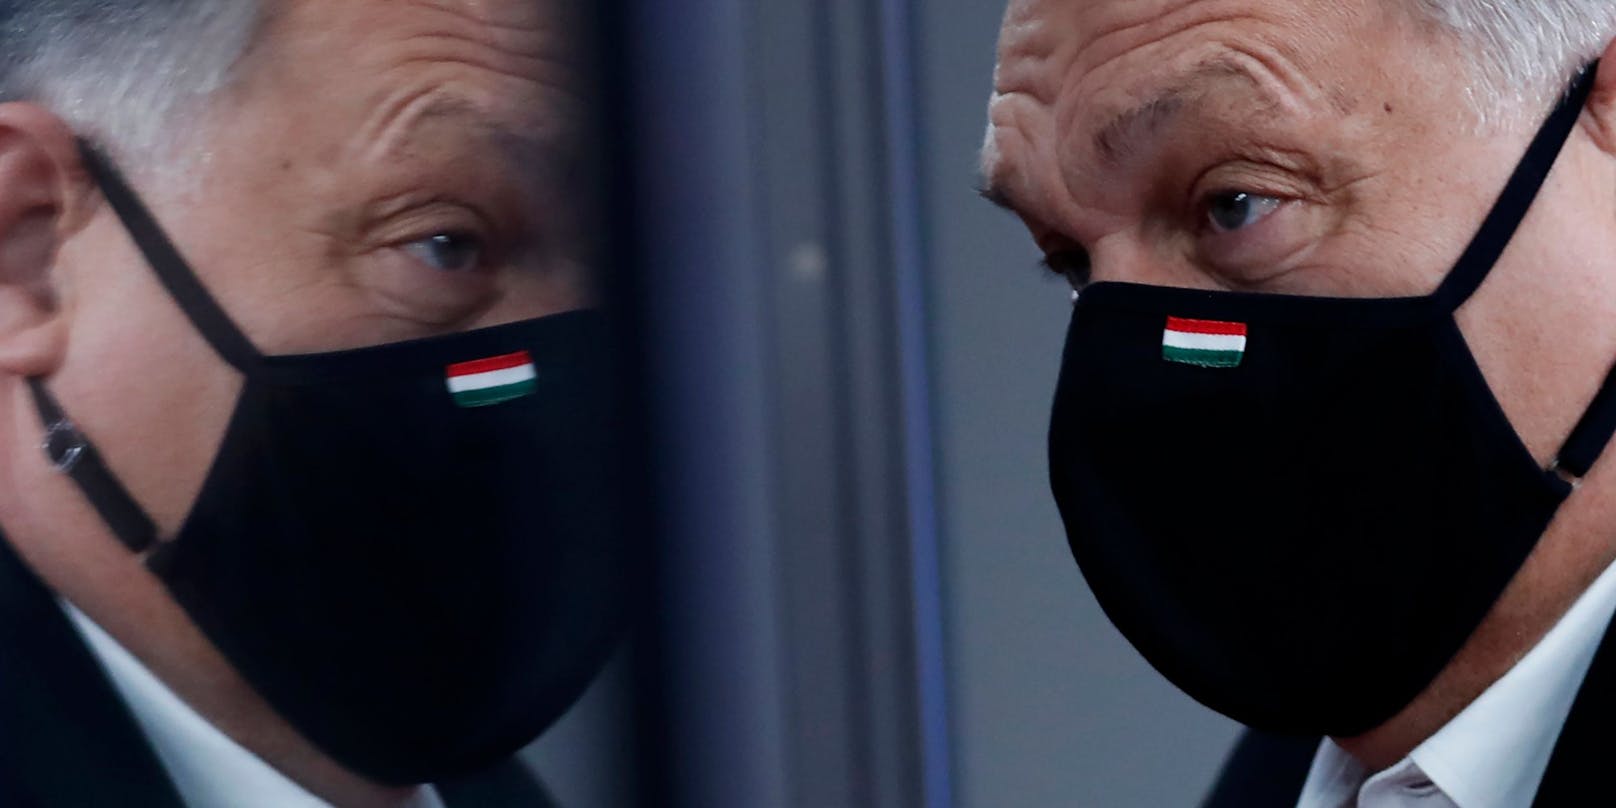 Orban steht wegen der Coronavirus-Krise und eines Skandals um einen führenden EU-Abgeordneten seiner Partei zunehmend unter Druck.